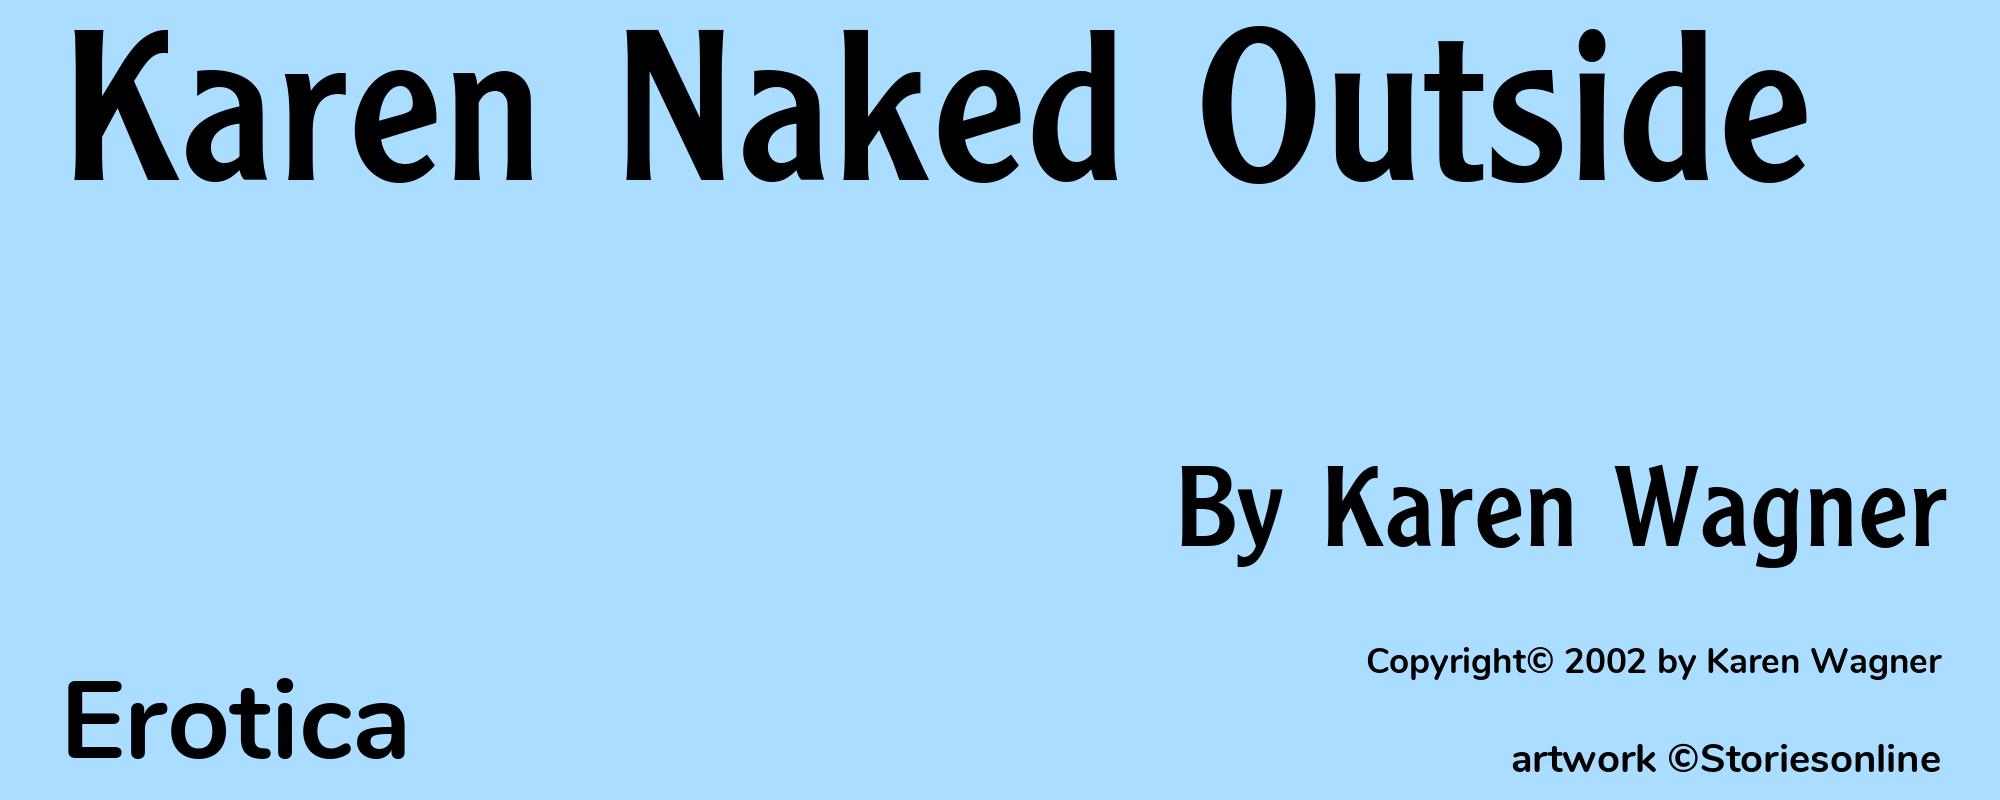 Karen Naked Outside - Cover